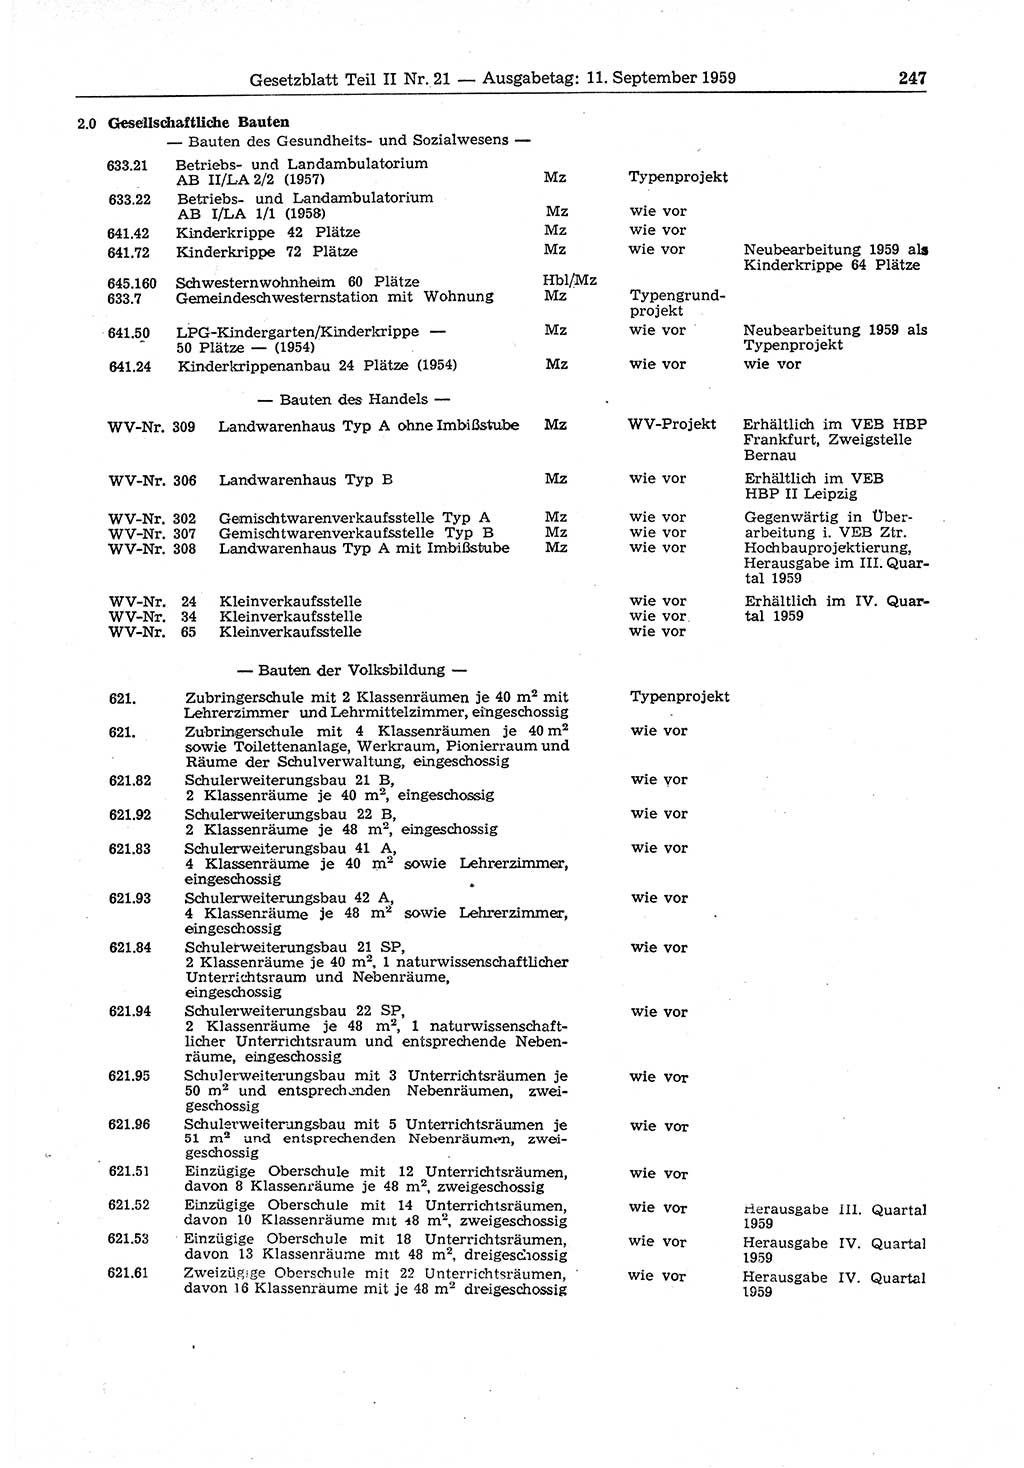 Gesetzblatt (GBl.) der Deutschen Demokratischen Republik (DDR) Teil ⅠⅠ 1959, Seite 247 (GBl. DDR ⅠⅠ 1959, S. 247)